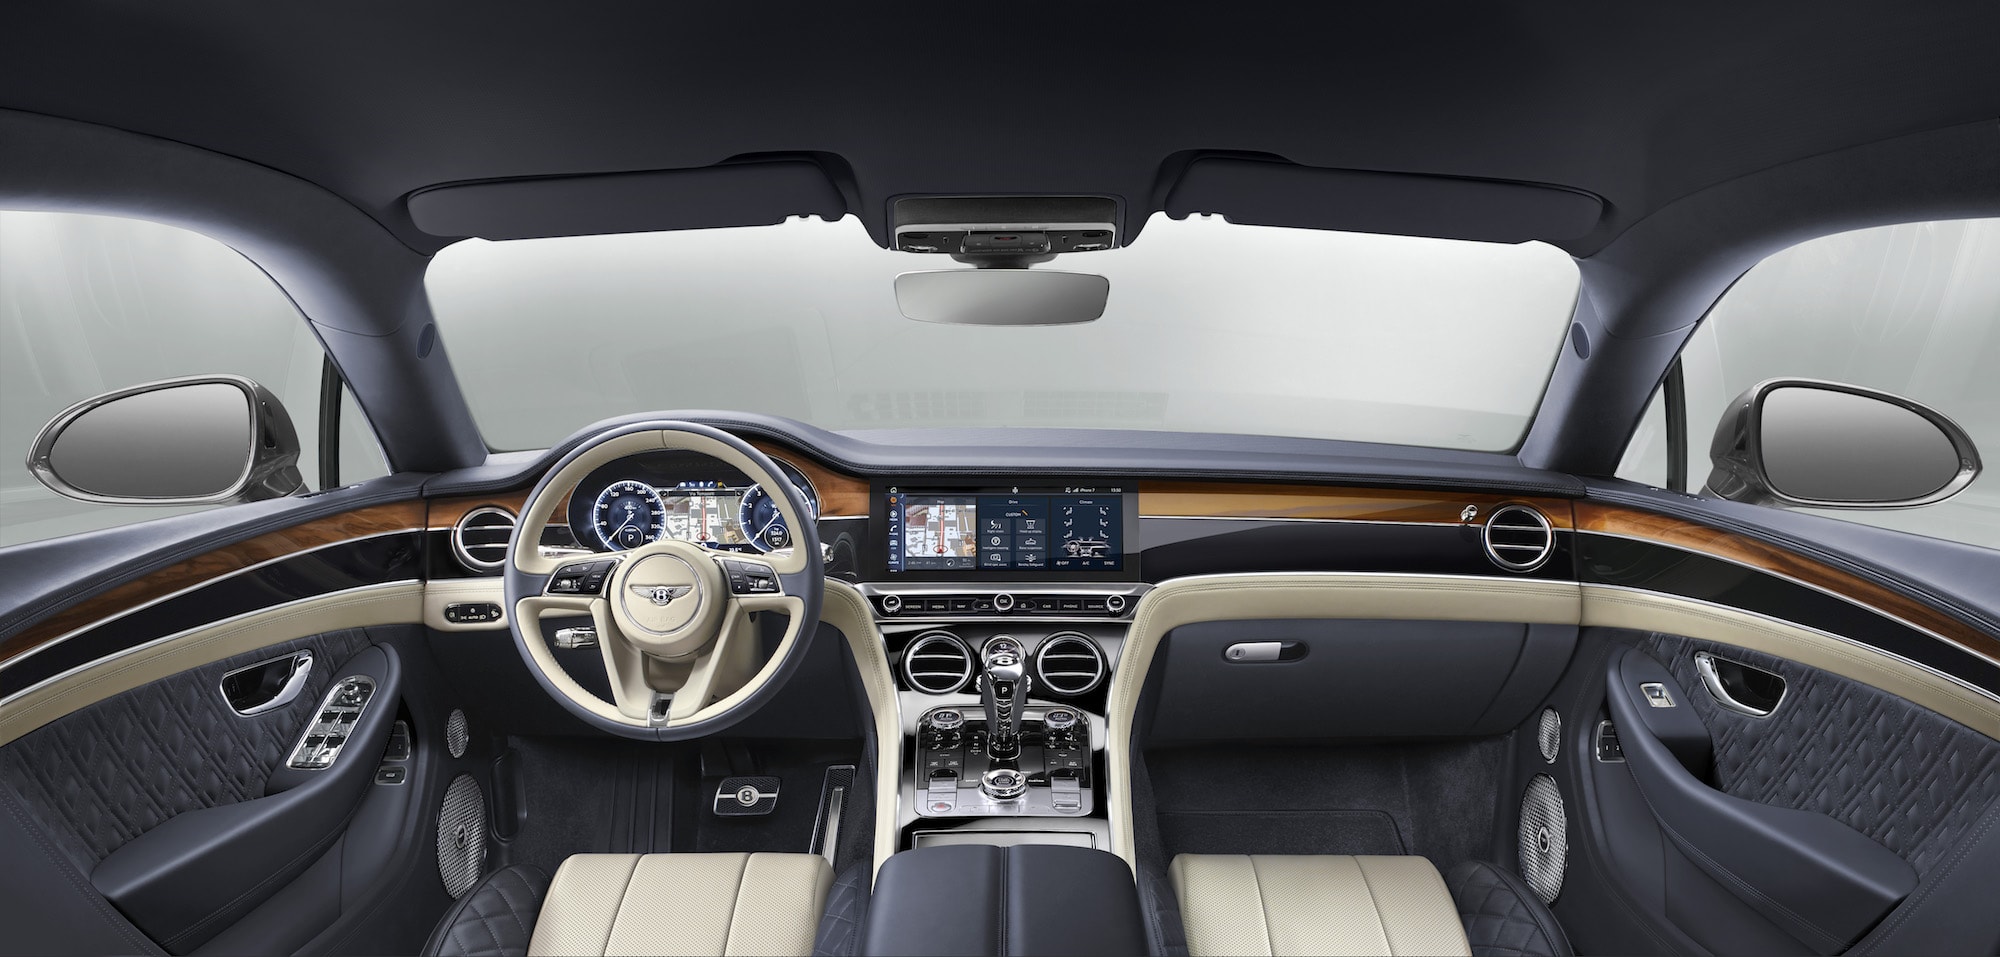 Der neue Bentley Continental GT 11